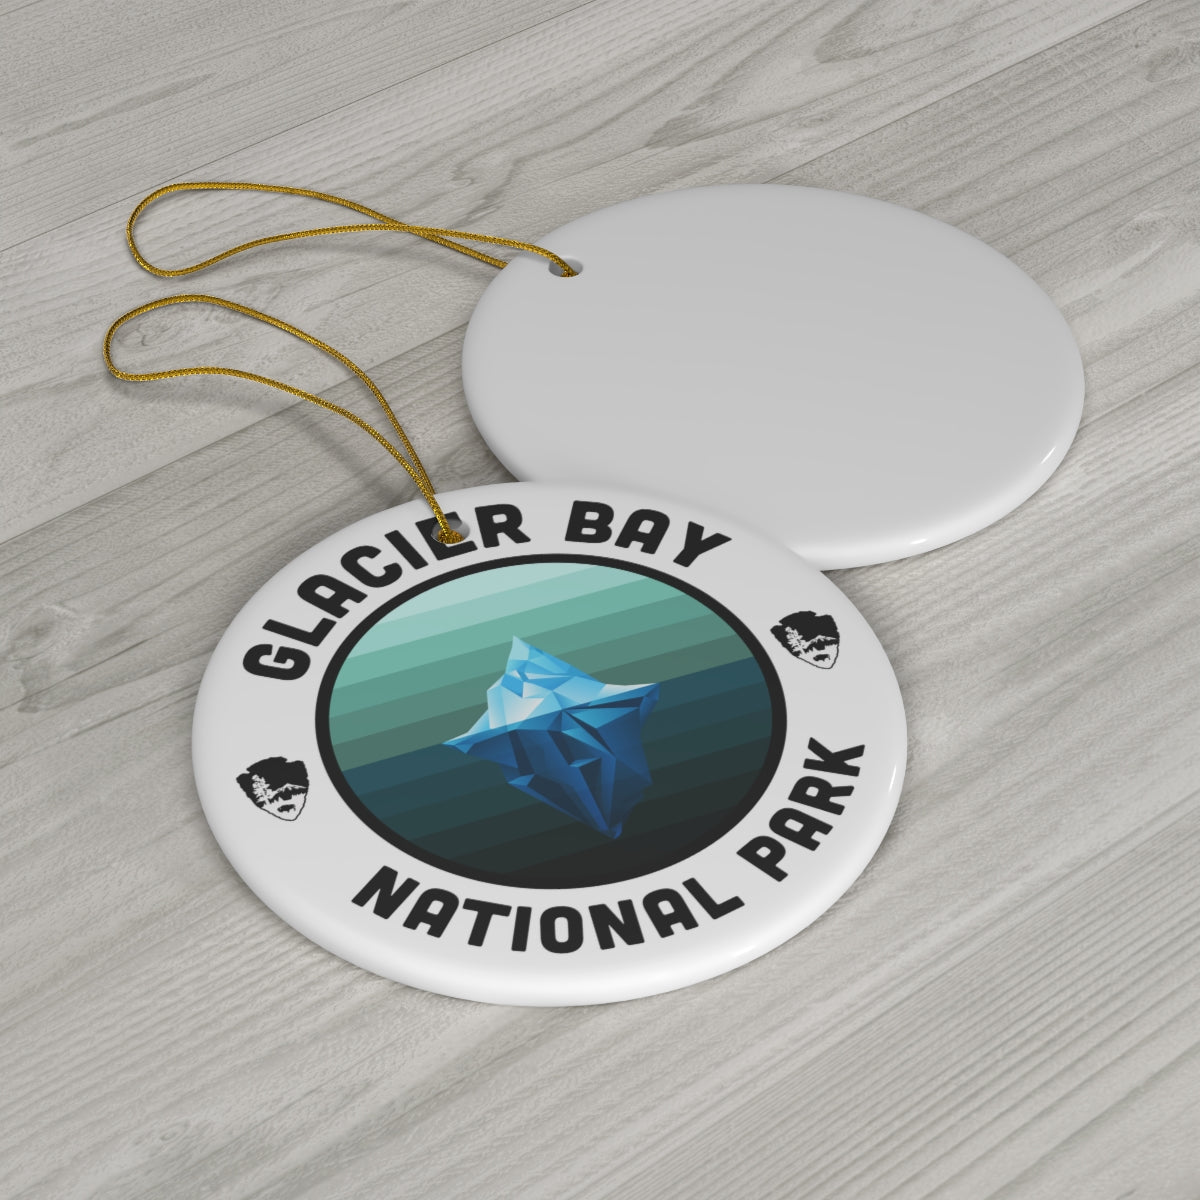 Glacier Bay National Park Ornament - Round Emblem Design